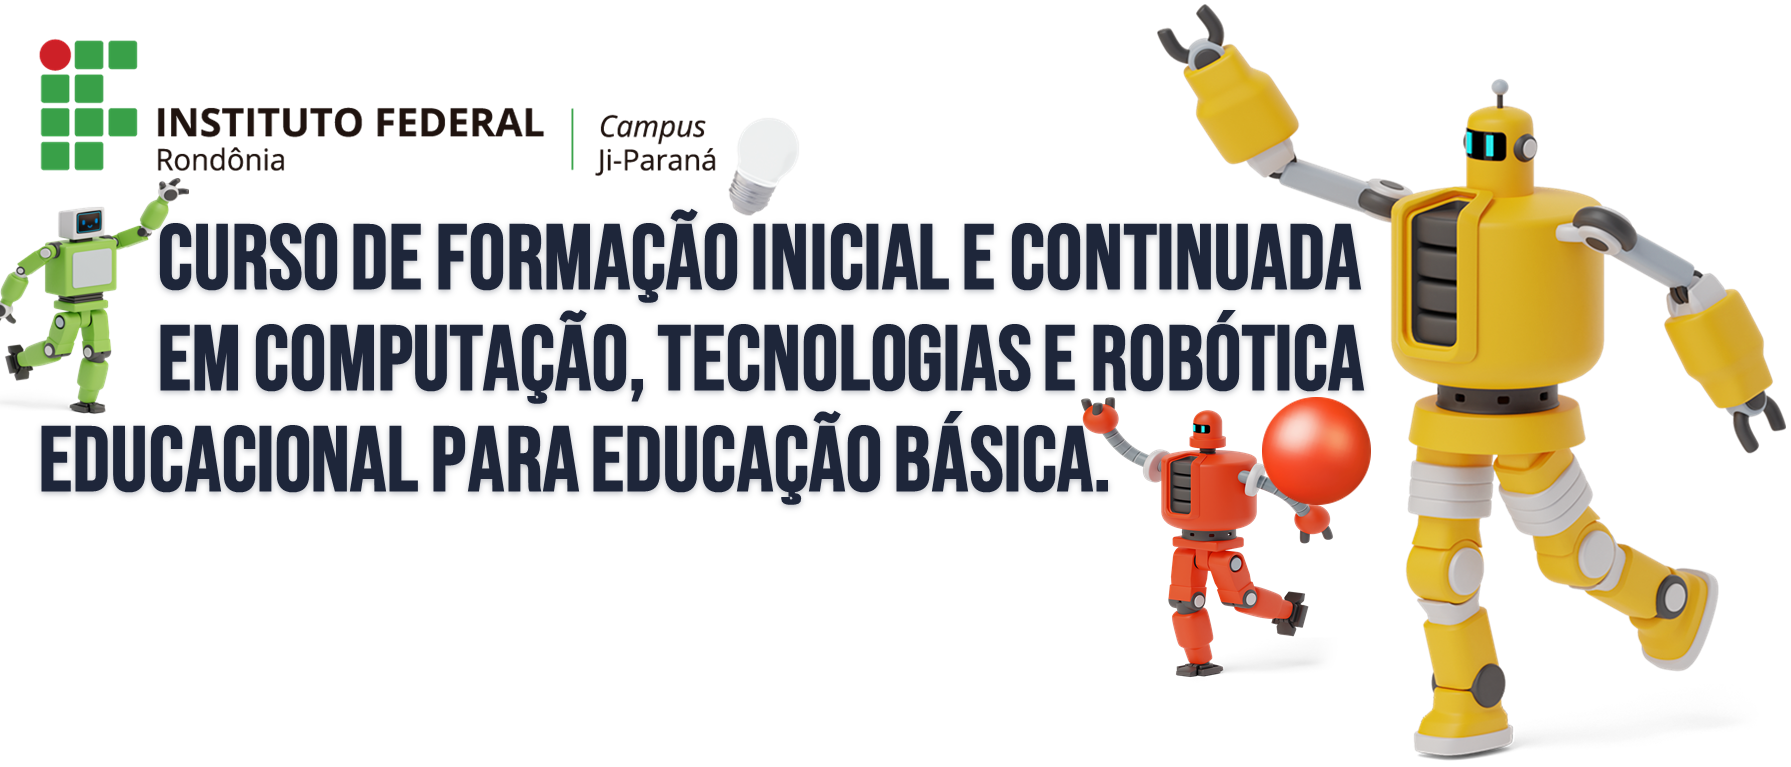 Curso de Formação Inicial e Continuada (FIC) de Robótica Educacional para a Educação Básica, com robôs, imagens meramente ilu